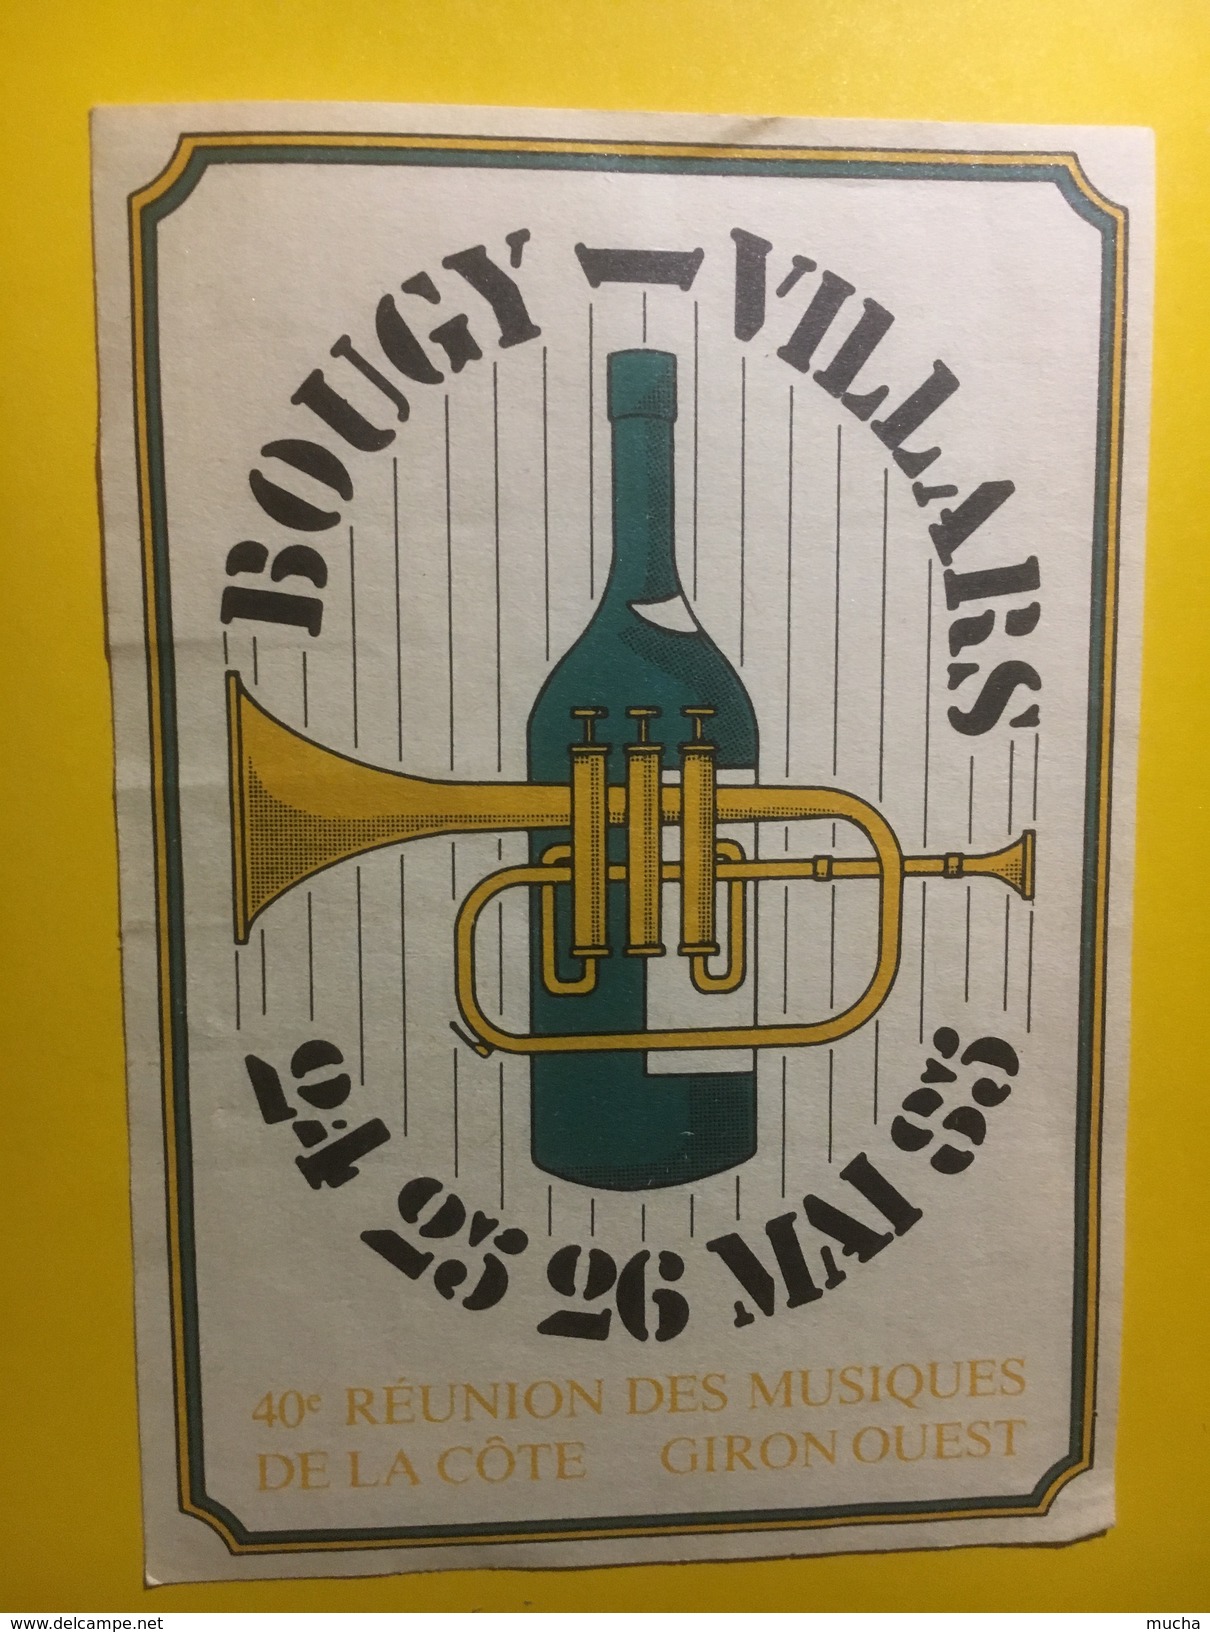 3616 - Suisse Vaud 40e Réunion Des Musiques De La Côte Giron Ouest Bougy-Villars 1985 - Musique